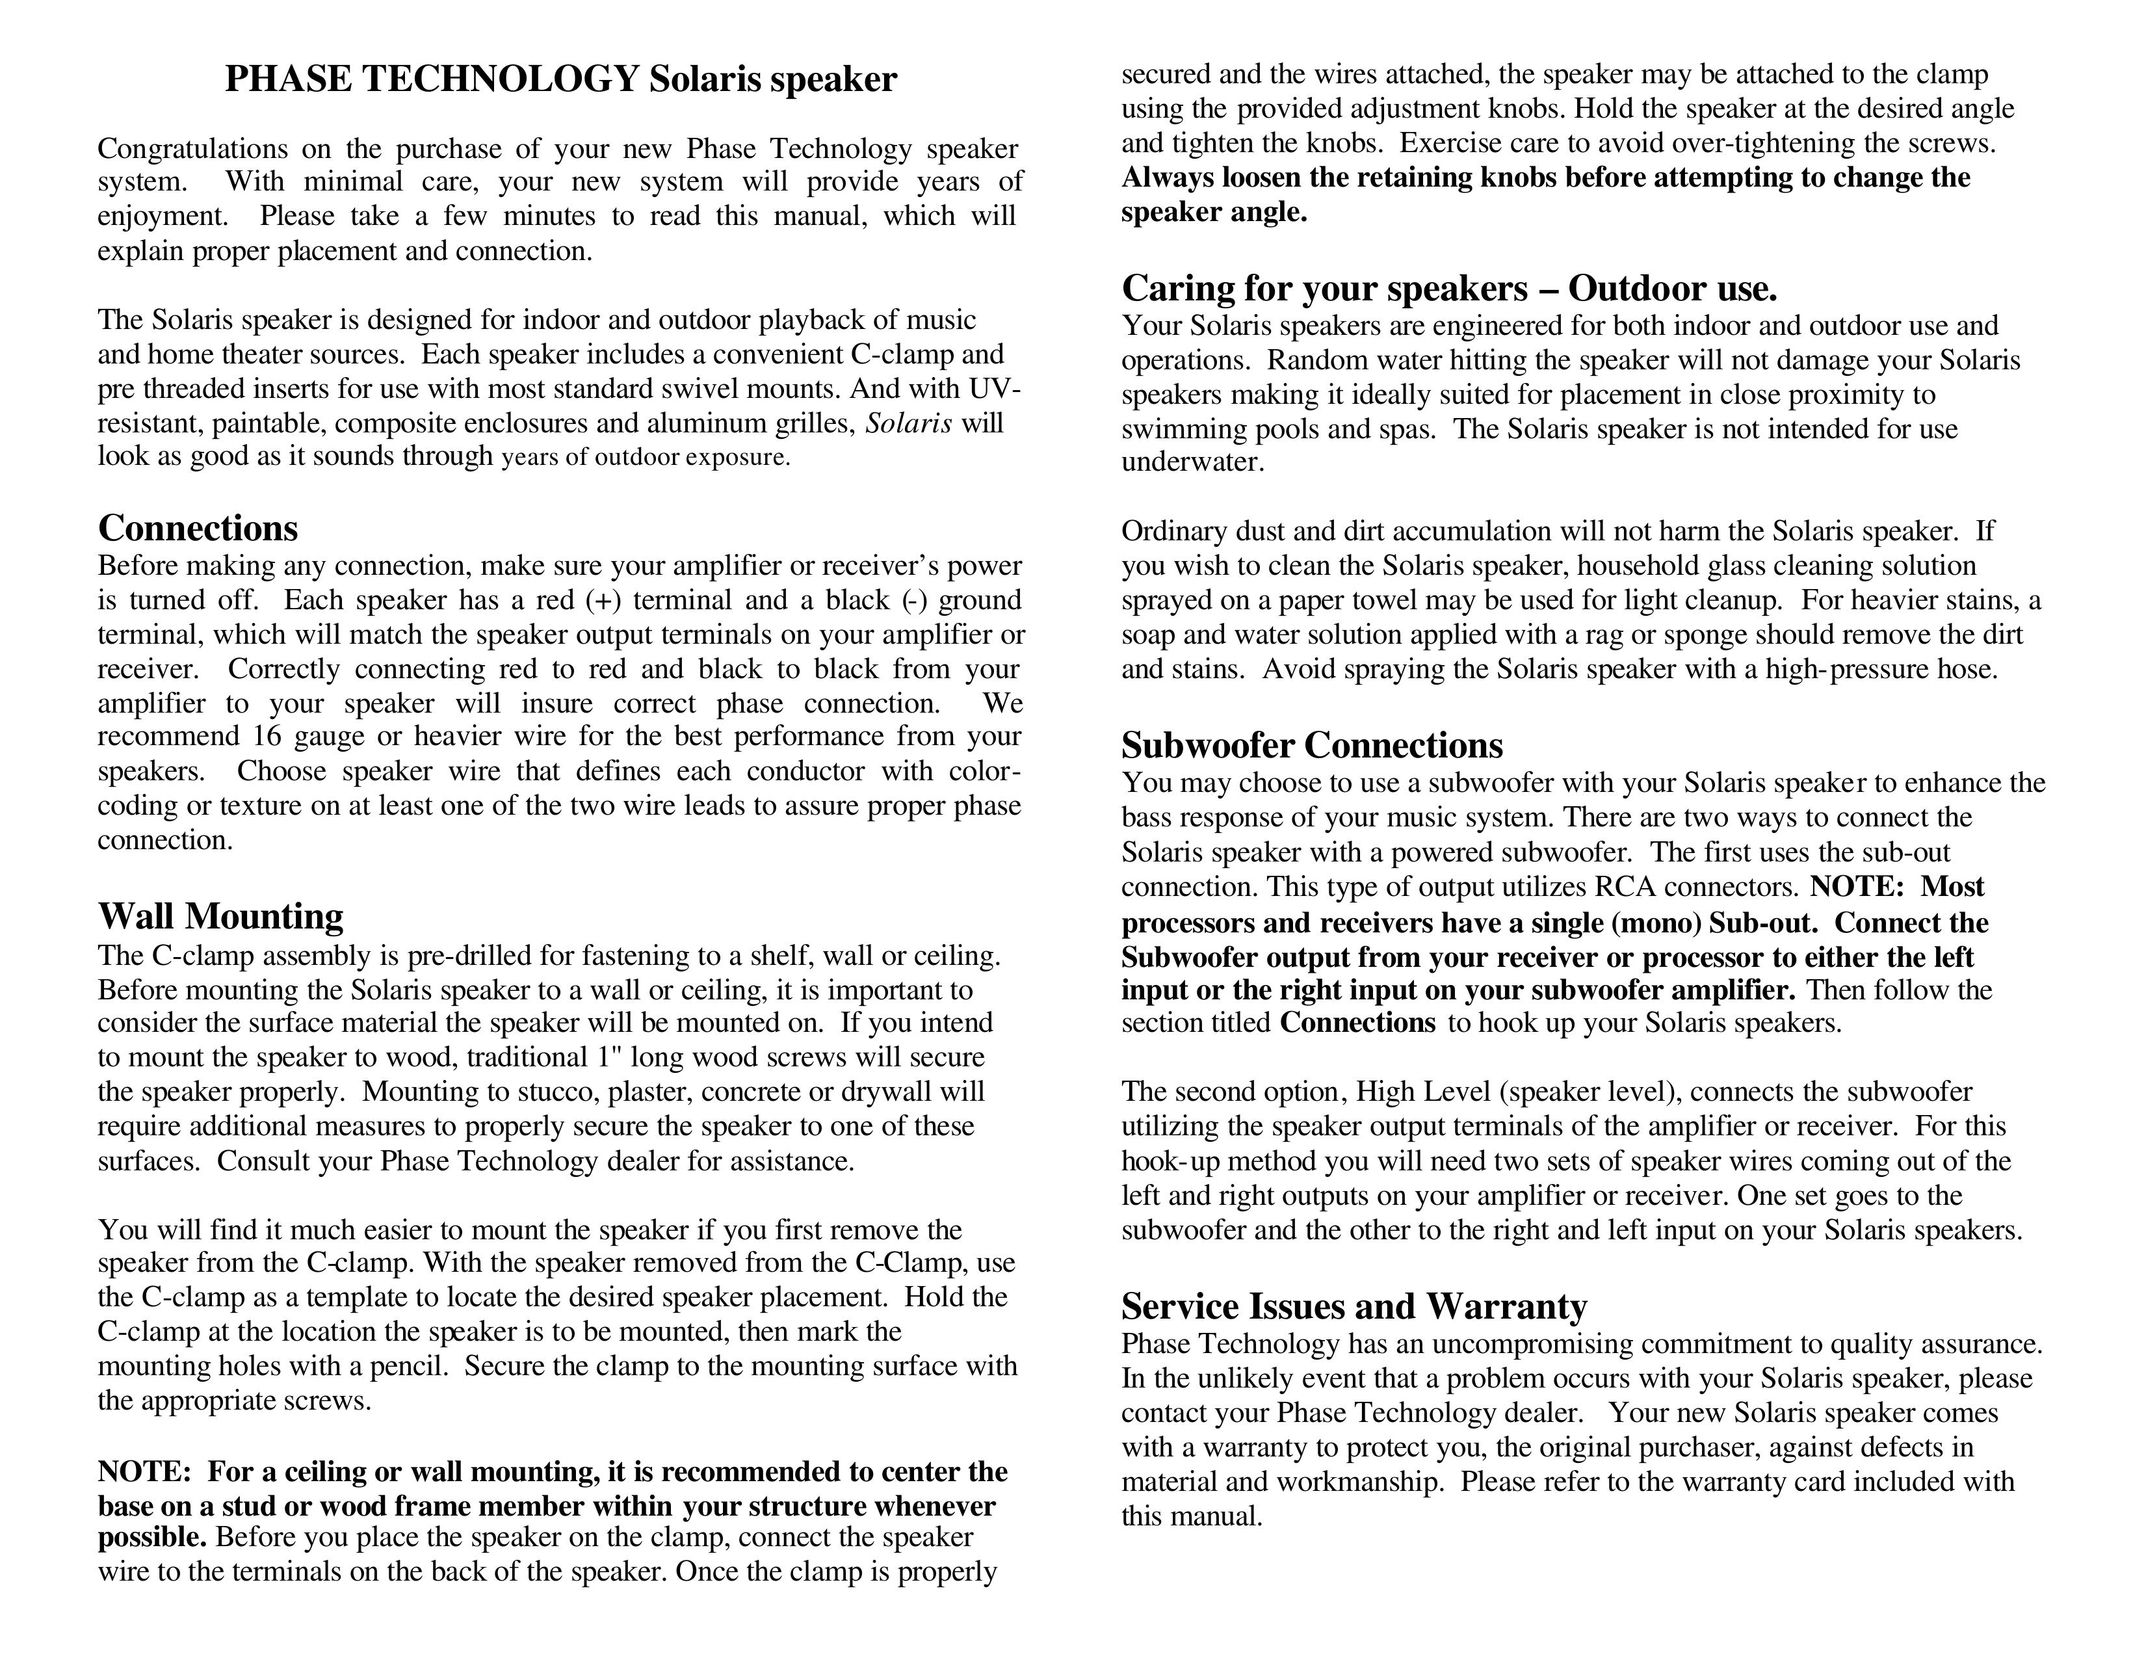 Phase Technology SPF 35 Portable Speaker User Manual